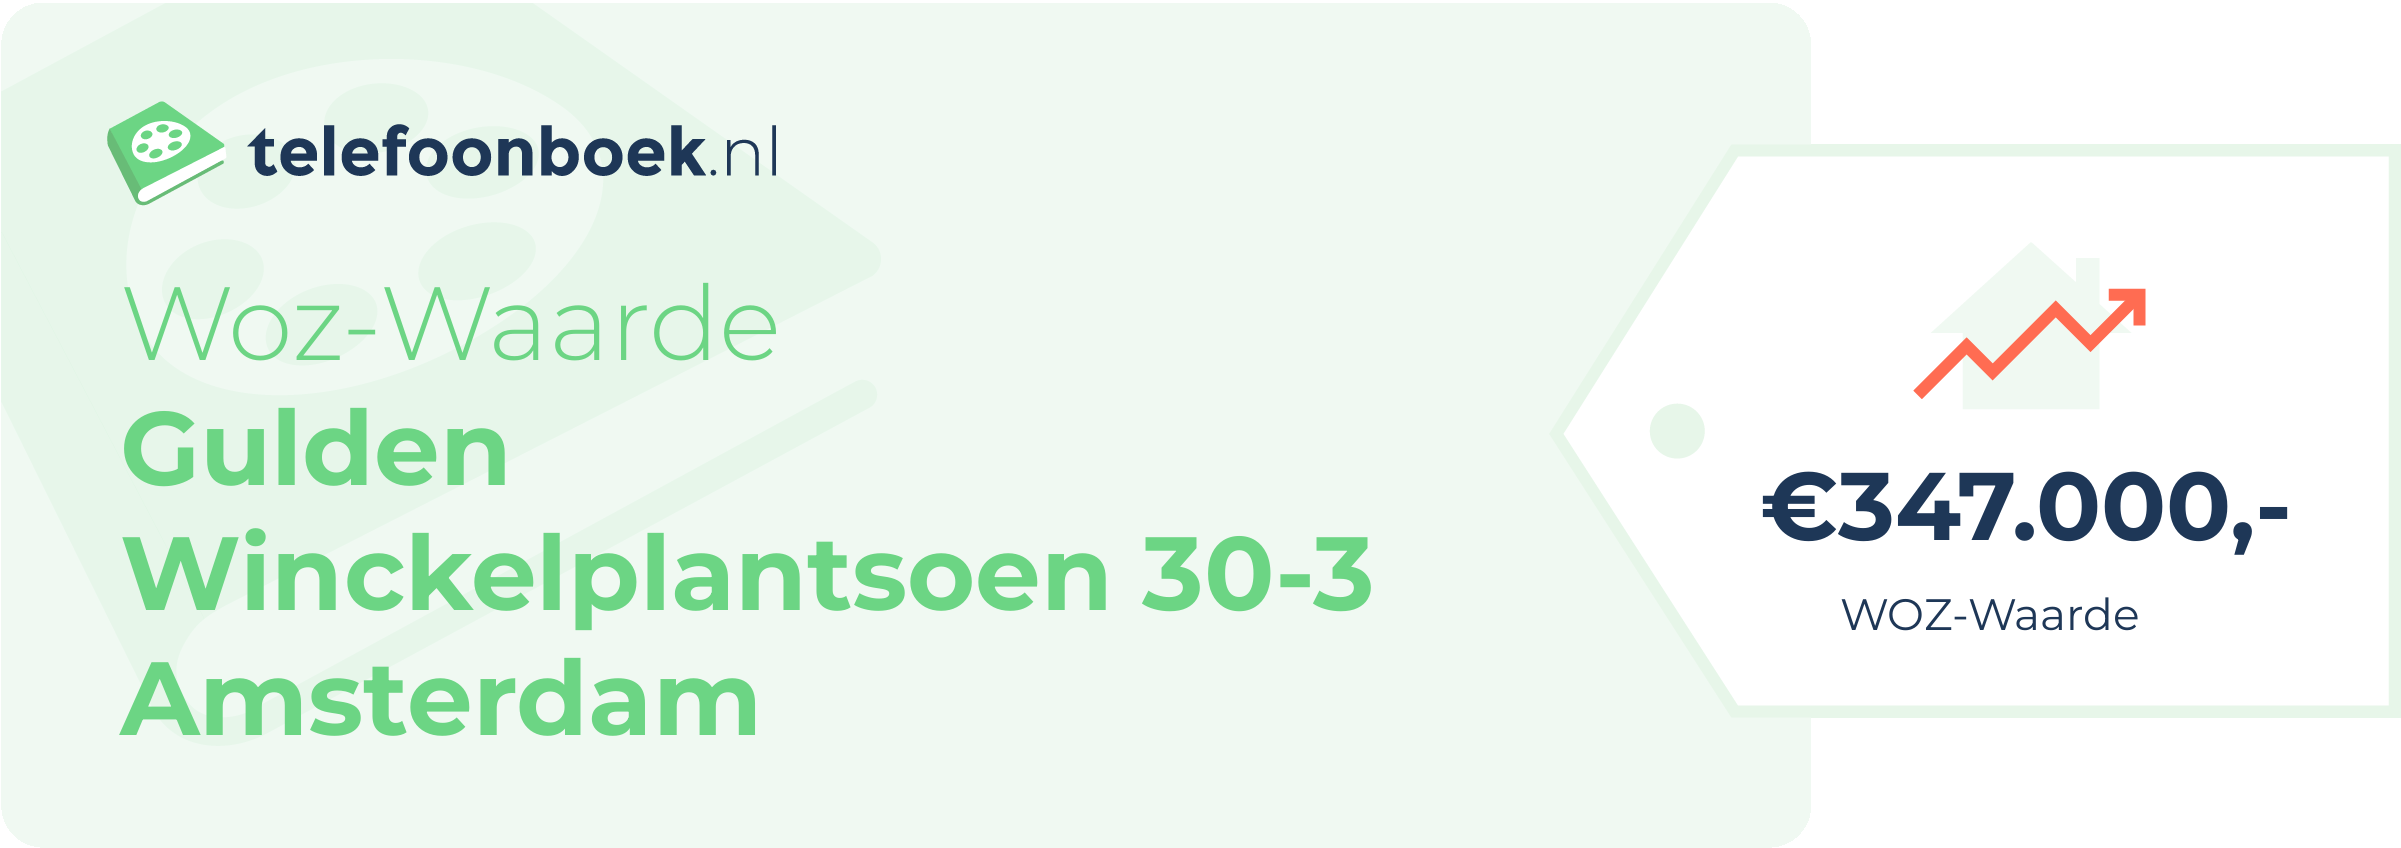 WOZ-waarde Gulden Winckelplantsoen 30-3 Amsterdam